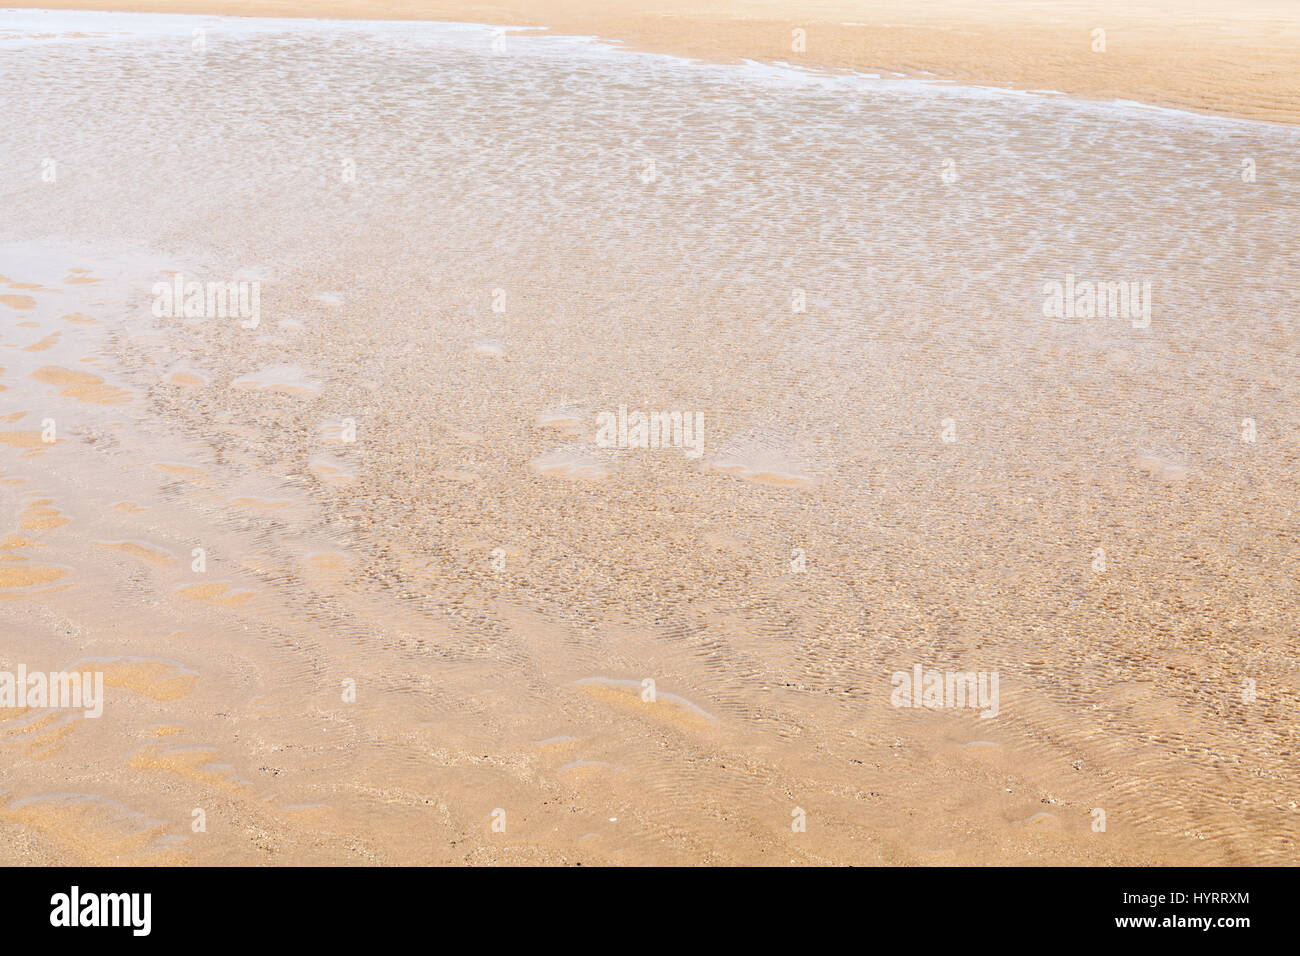 El borde del agua. Agua de mar superficial ondeando en la brisa de la costa de una playa de arena. Mirando desde el mar hacia la arena, Inglaterra, Reino Unido. Foto de stock